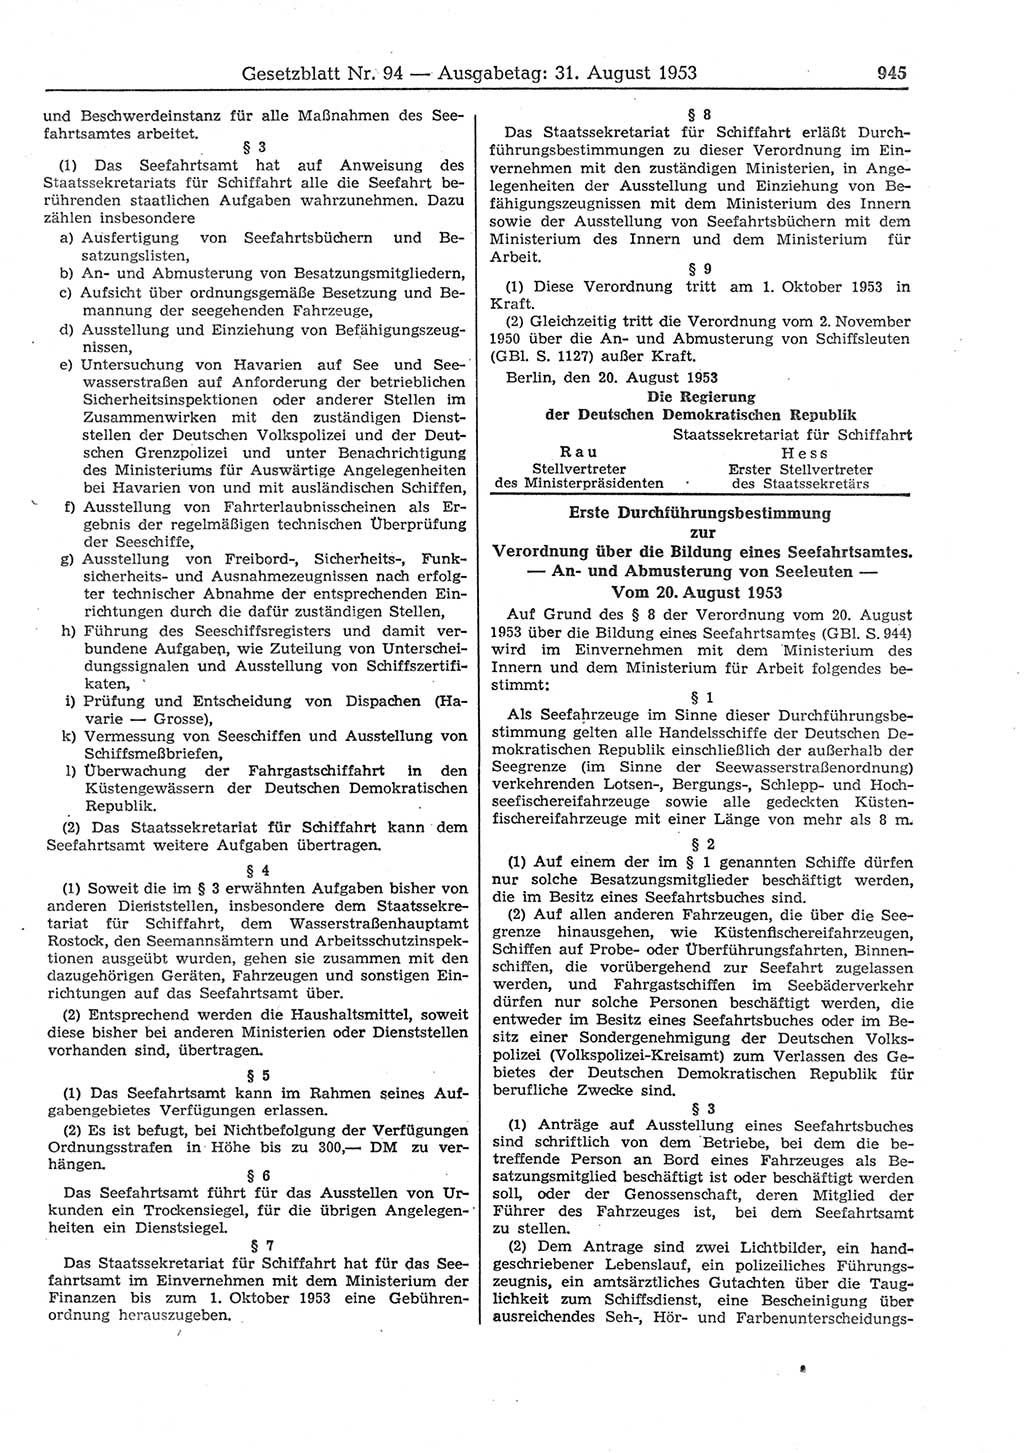 Gesetzblatt (GBl.) der Deutschen Demokratischen Republik (DDR) 1953, Seite 945 (GBl. DDR 1953, S. 945)